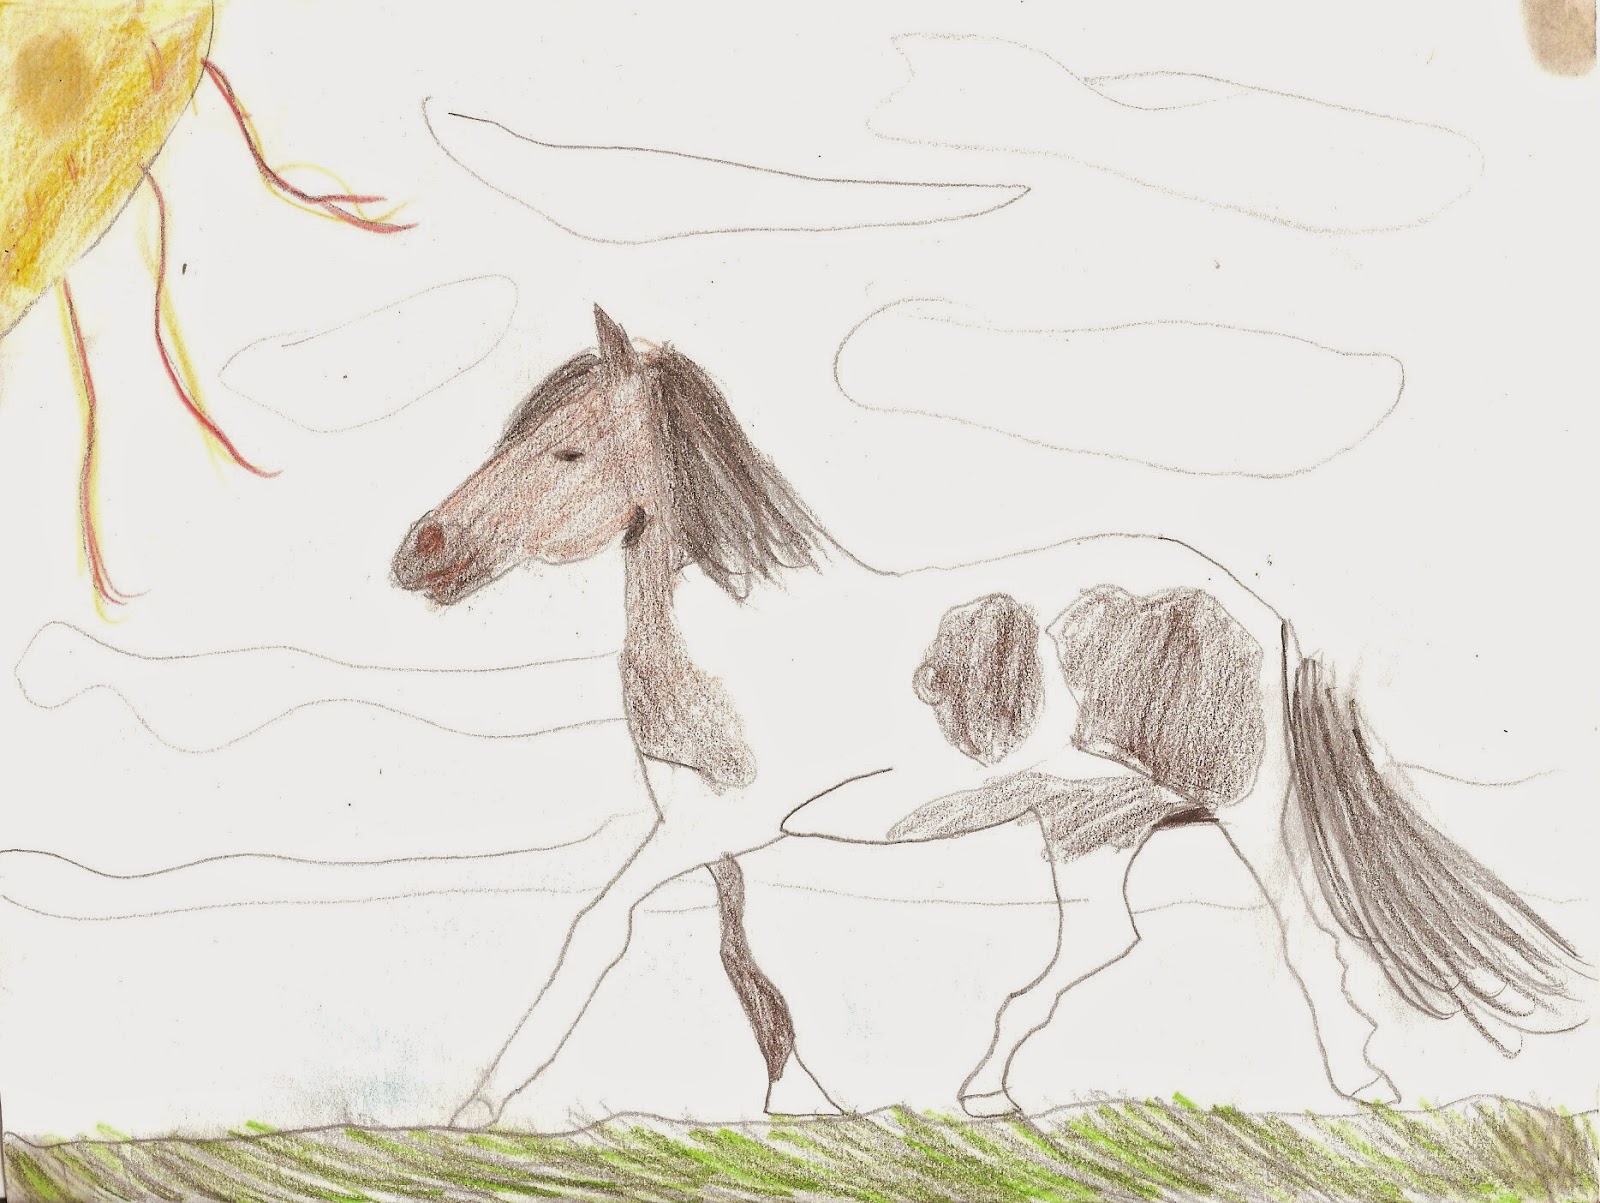 Arti grafiche e creative novembre 2014 for Immagini di cavalli da disegnare